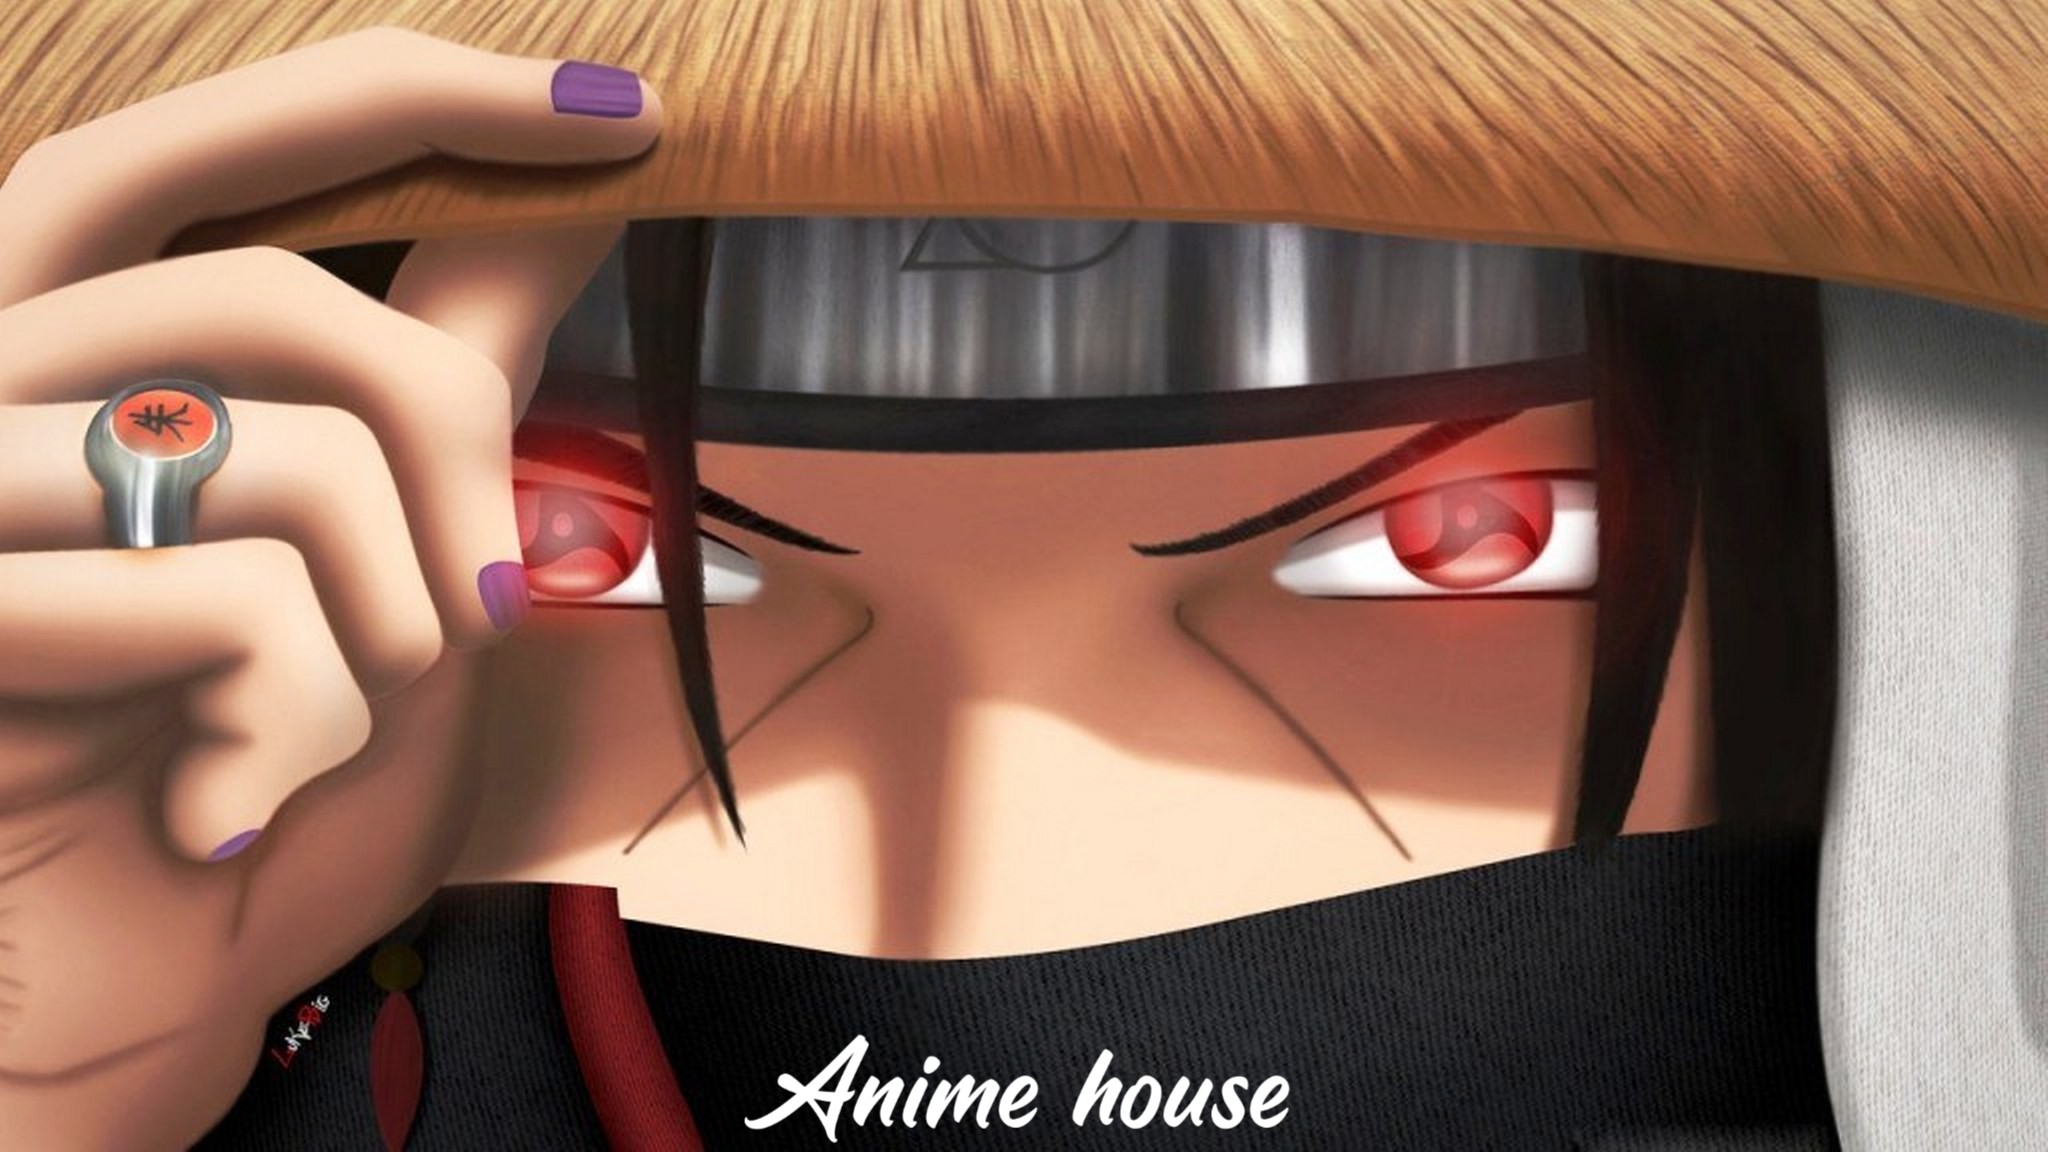 Itachi Uchiha Anime Naruto Image By ᴋᴀɢᴀᴍɪ ʀᴇɪ